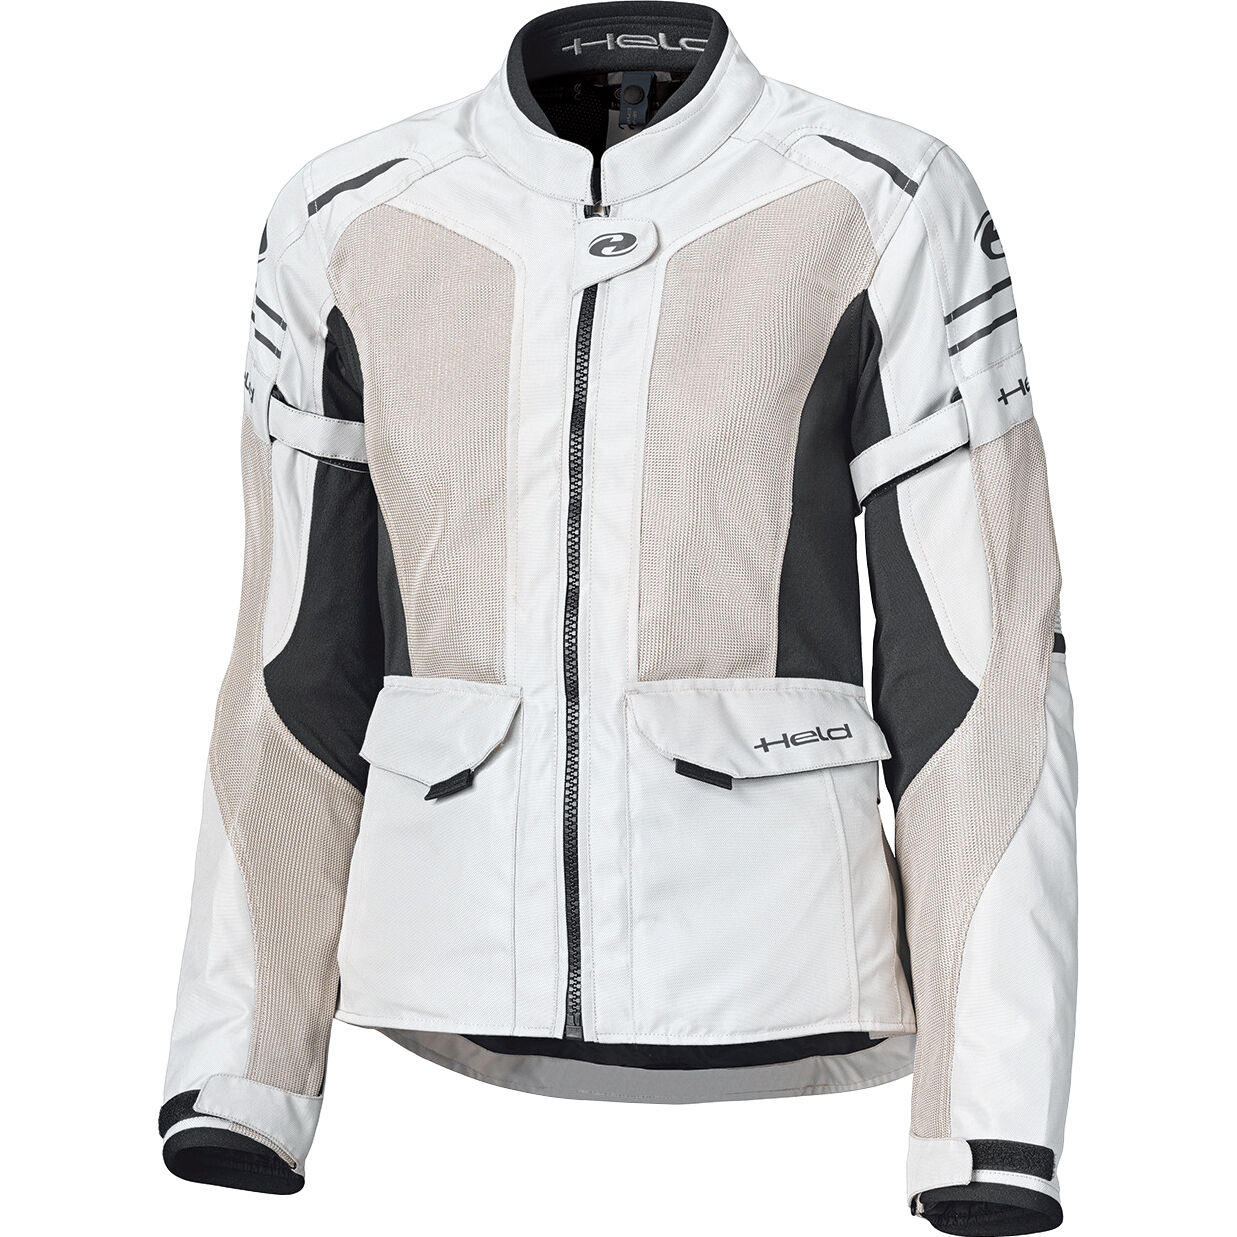 *Sale Items* Mens Triumph Trek Textile Motorcycle Jacket 